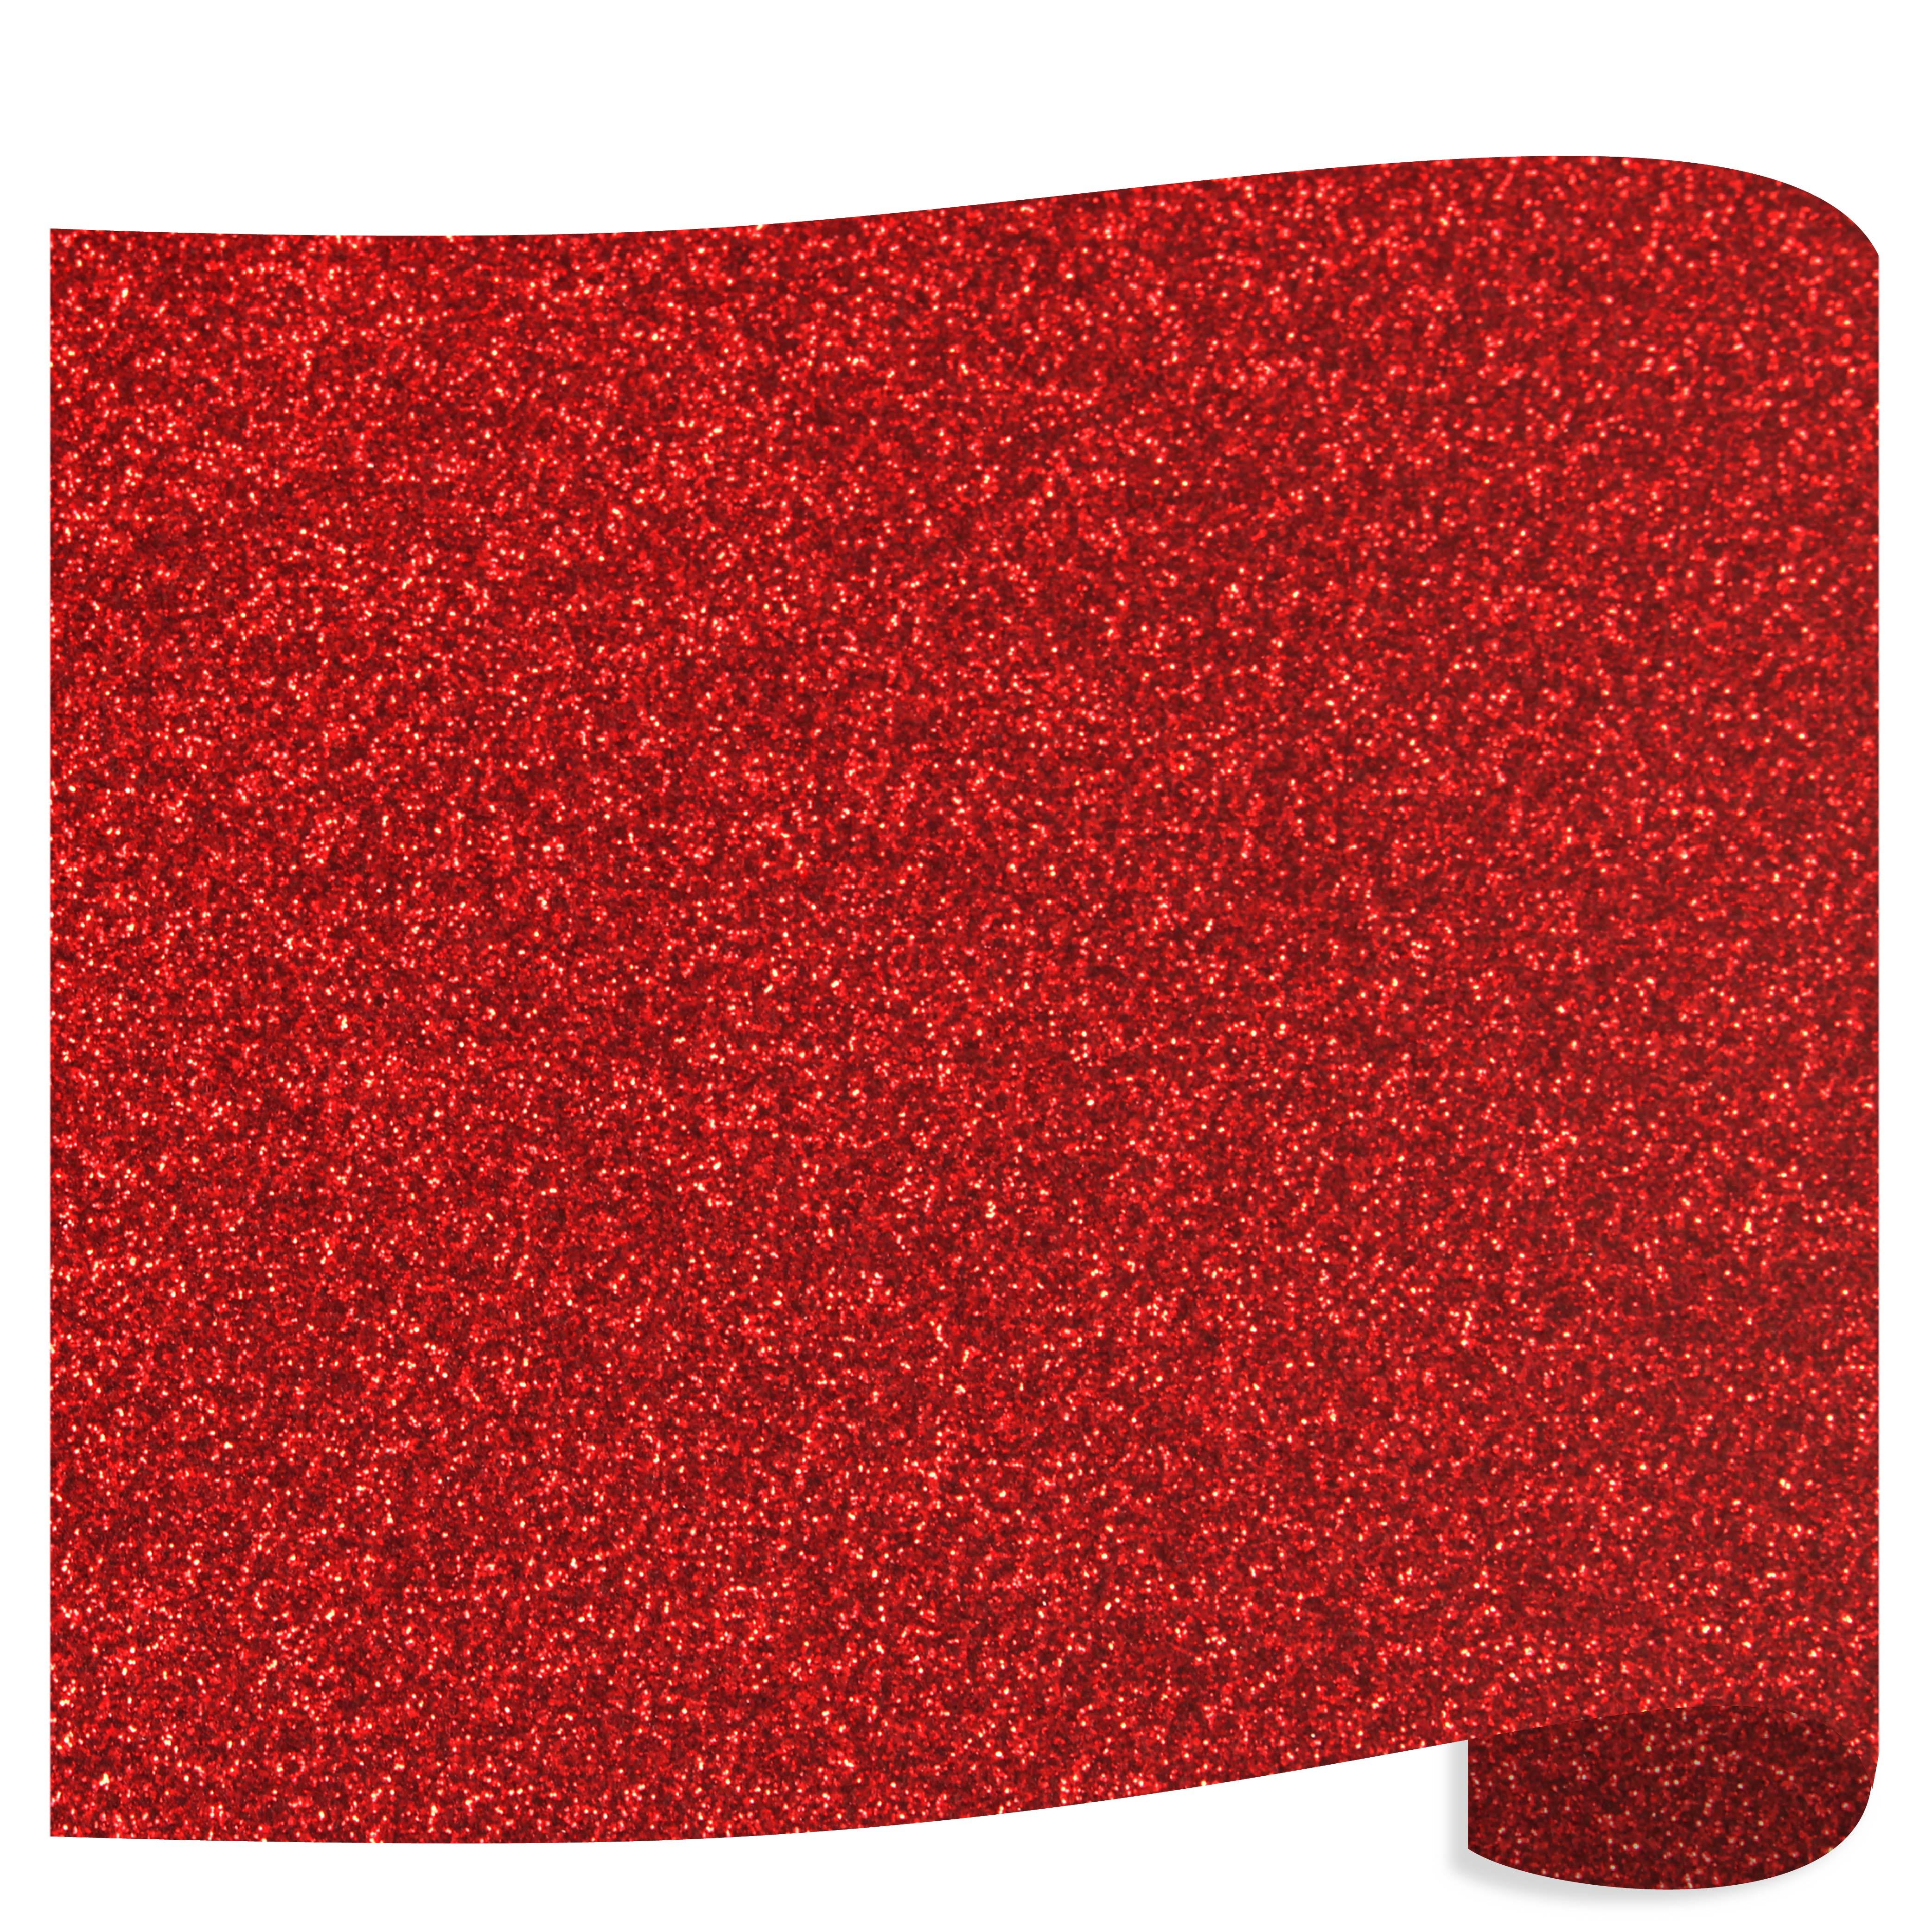 Siser Glitter Heat Transfer Vinyl (HTV) - Red